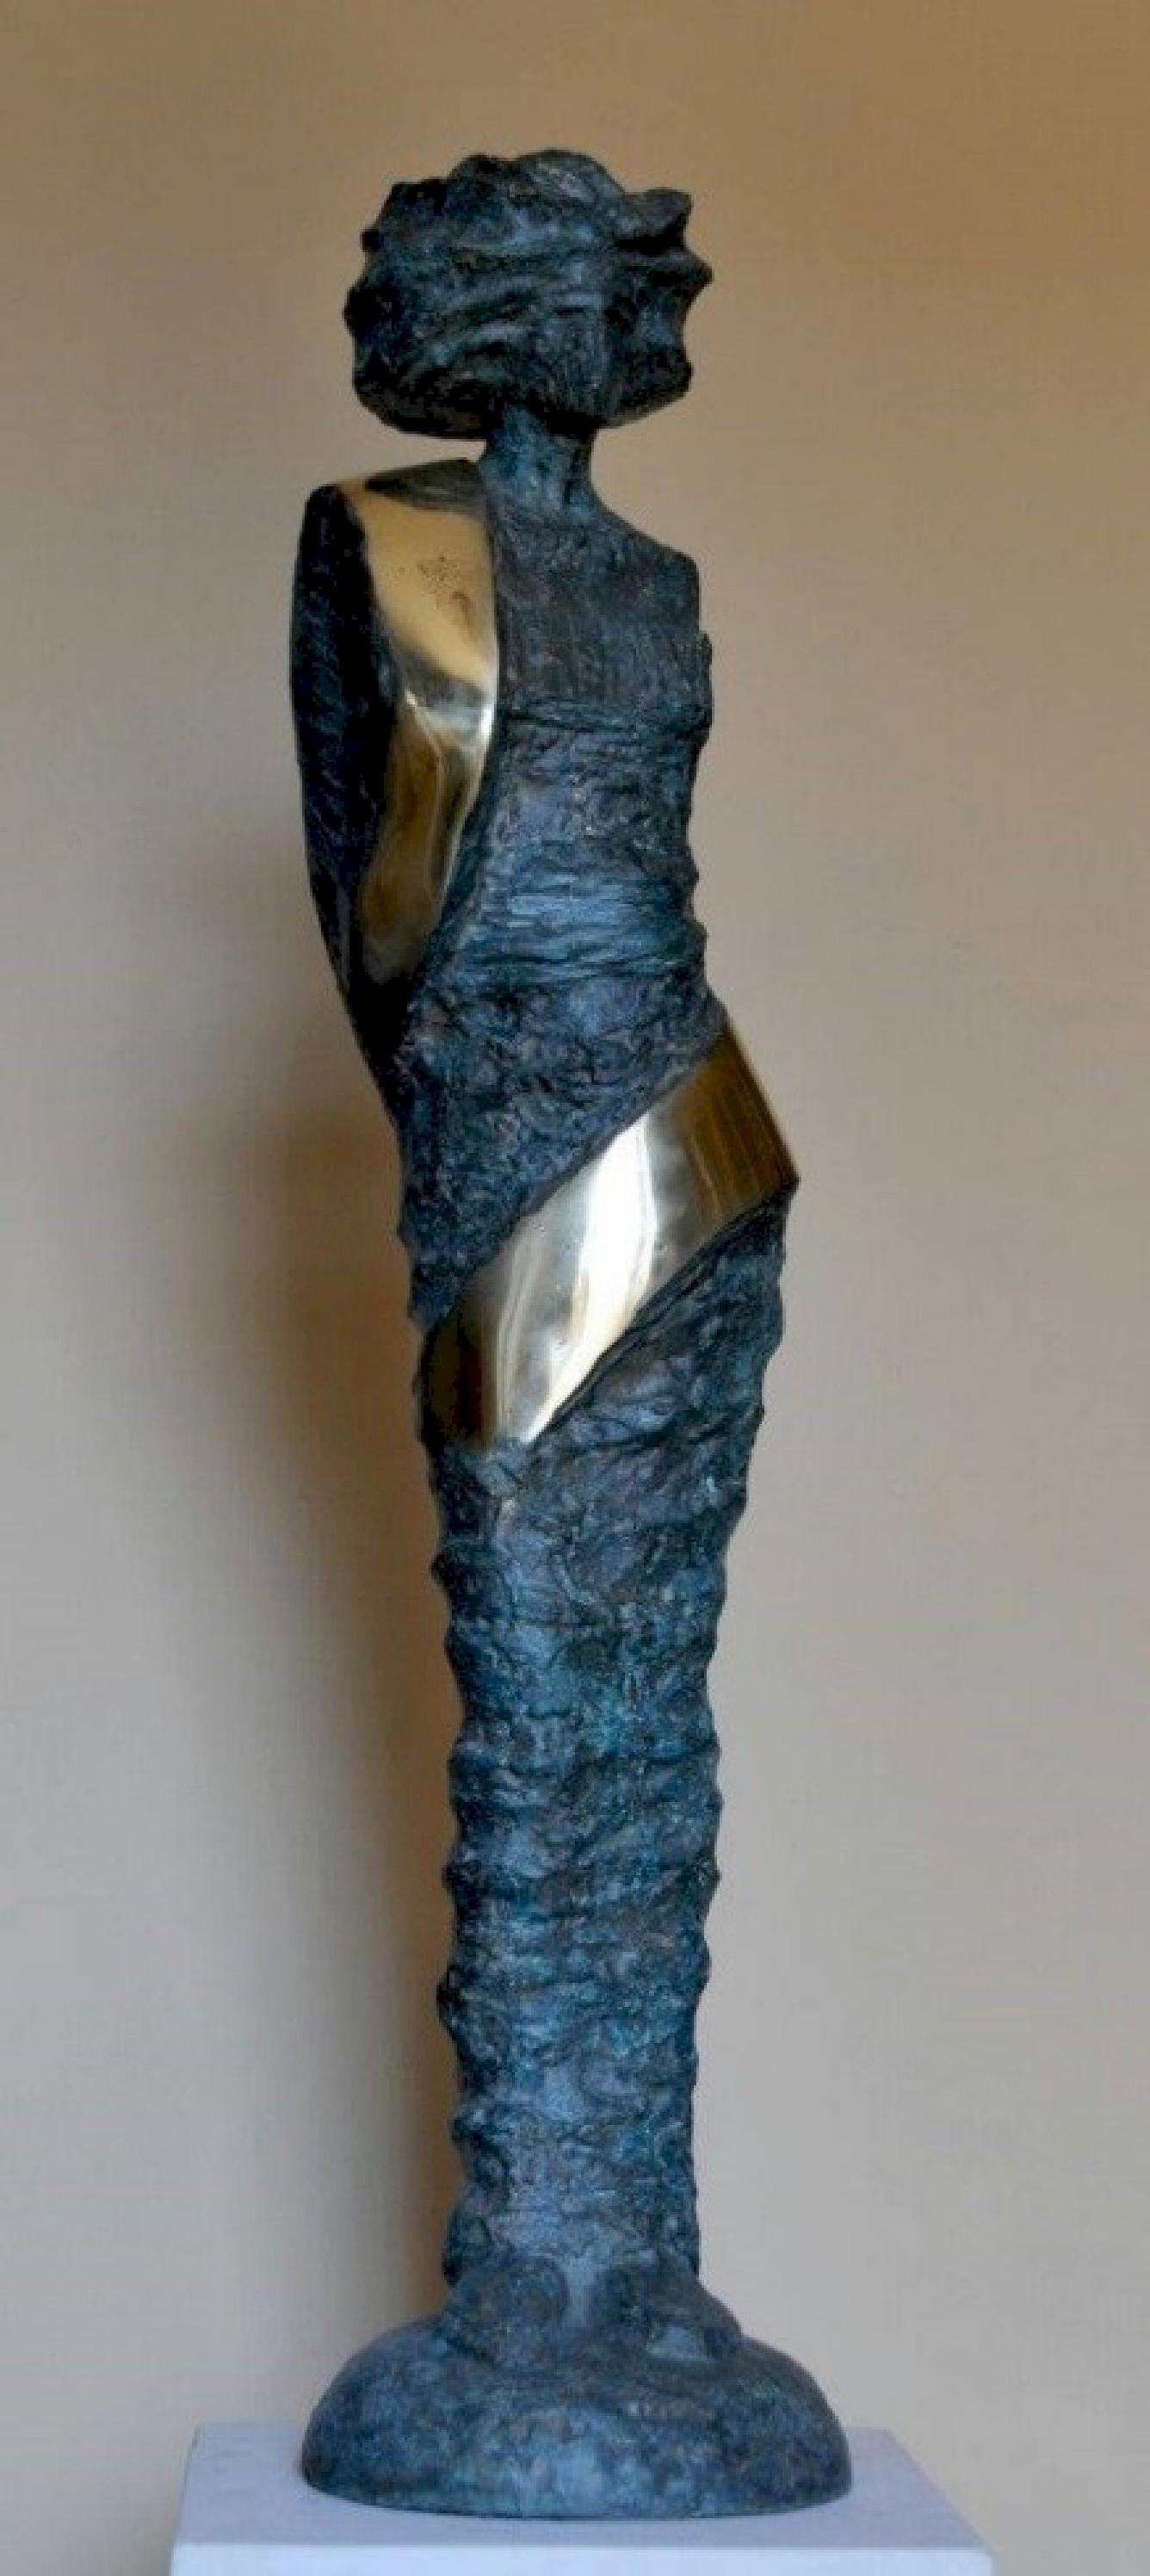 "Princesse v.2" Sculpture en bronze 44" x 9" x 7" pouces par Sarkis Tossonian		

Sarkis Tossoonian est né à Alexandrie en 1953. Il est diplômé de la Faculté des Beaux-Arts/Sculpture en 1979. Il a commencé à exposer dans des expositions individuelles